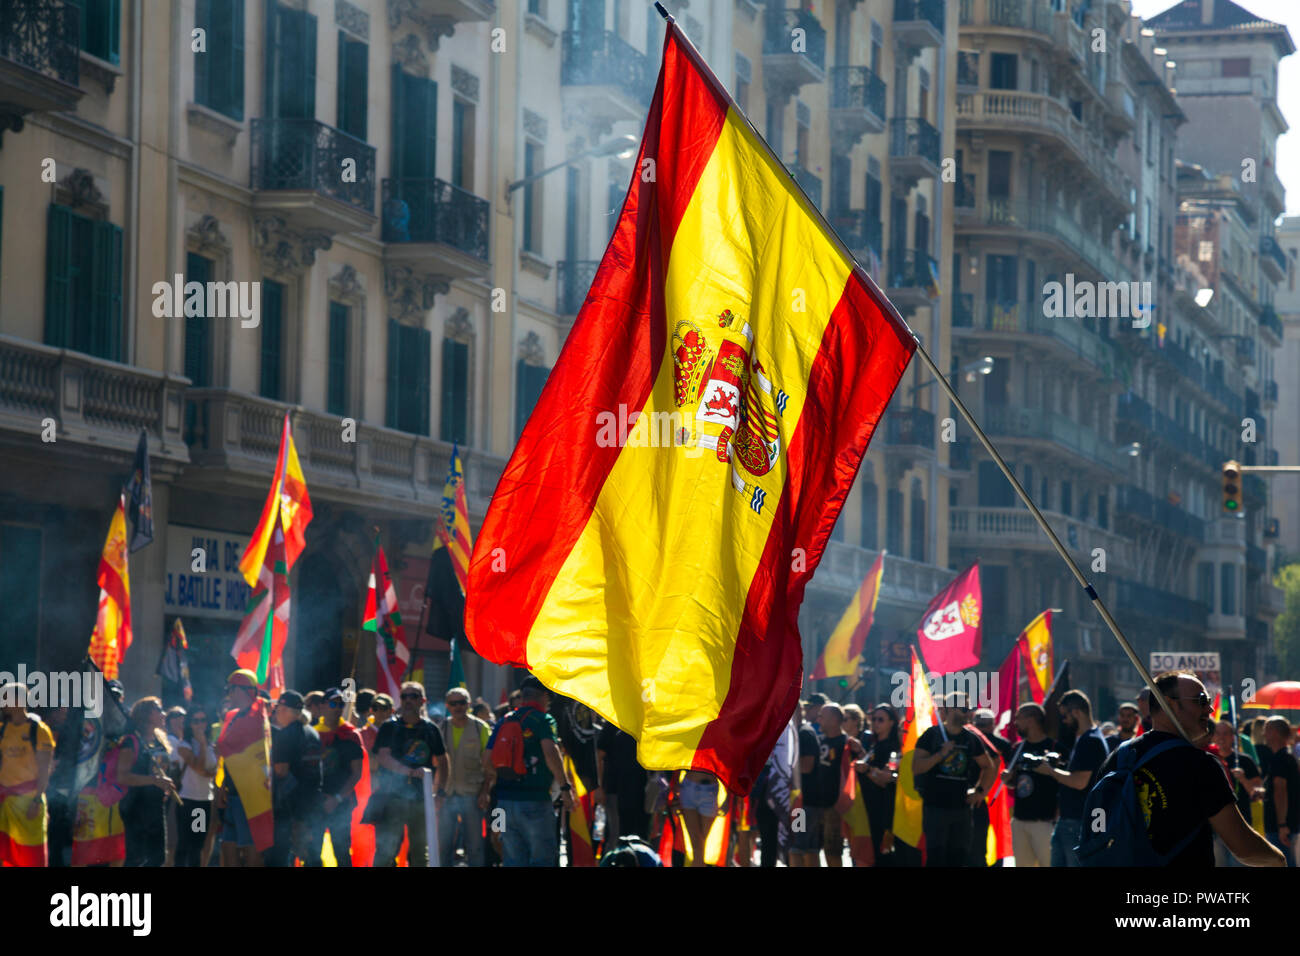 29.09.2018, Barcelona, Spanien - Katalanische Unabhängigkeit Separatisten Protest in der Innenstadt Stockfoto